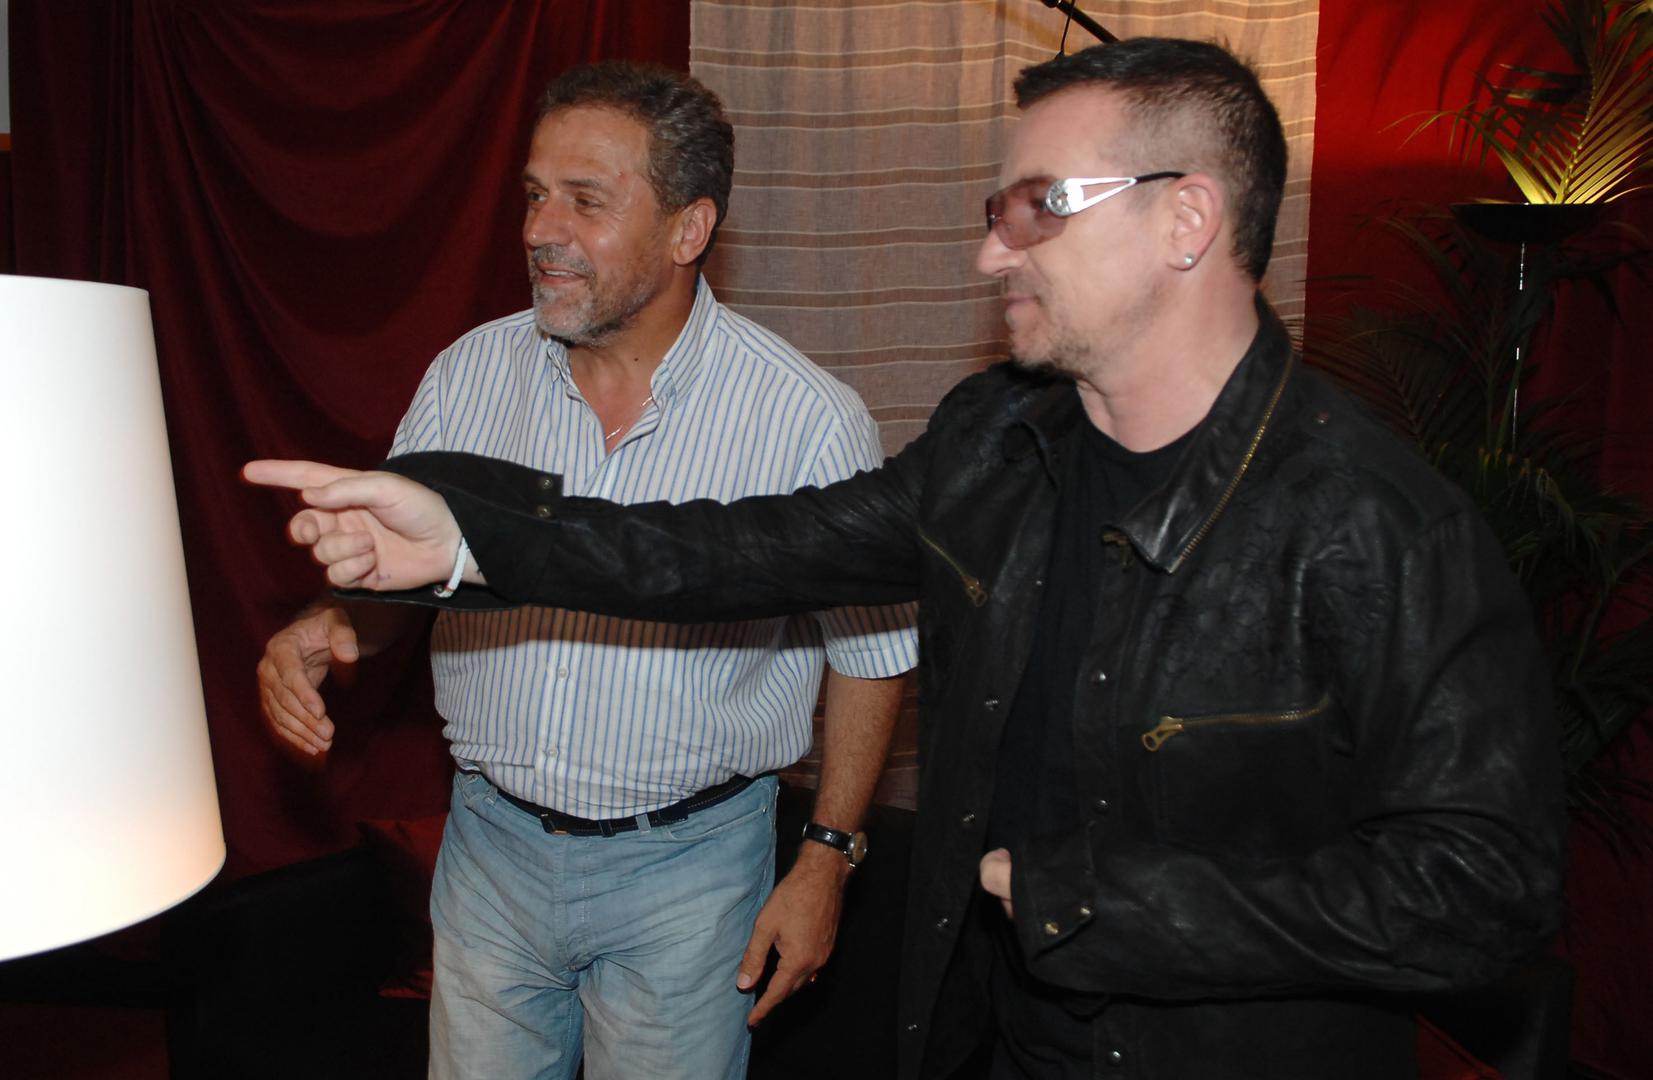 Tim povodom dečke iz U2-a primio je i gradonačelnik Milan Bandić koji je tada pjevaču Bonu Voxu i njegovom bendu uručio Plakete grada Zagreba zbog humanitarnog rada i mirotvornih  nastojanja diljem svijeta.